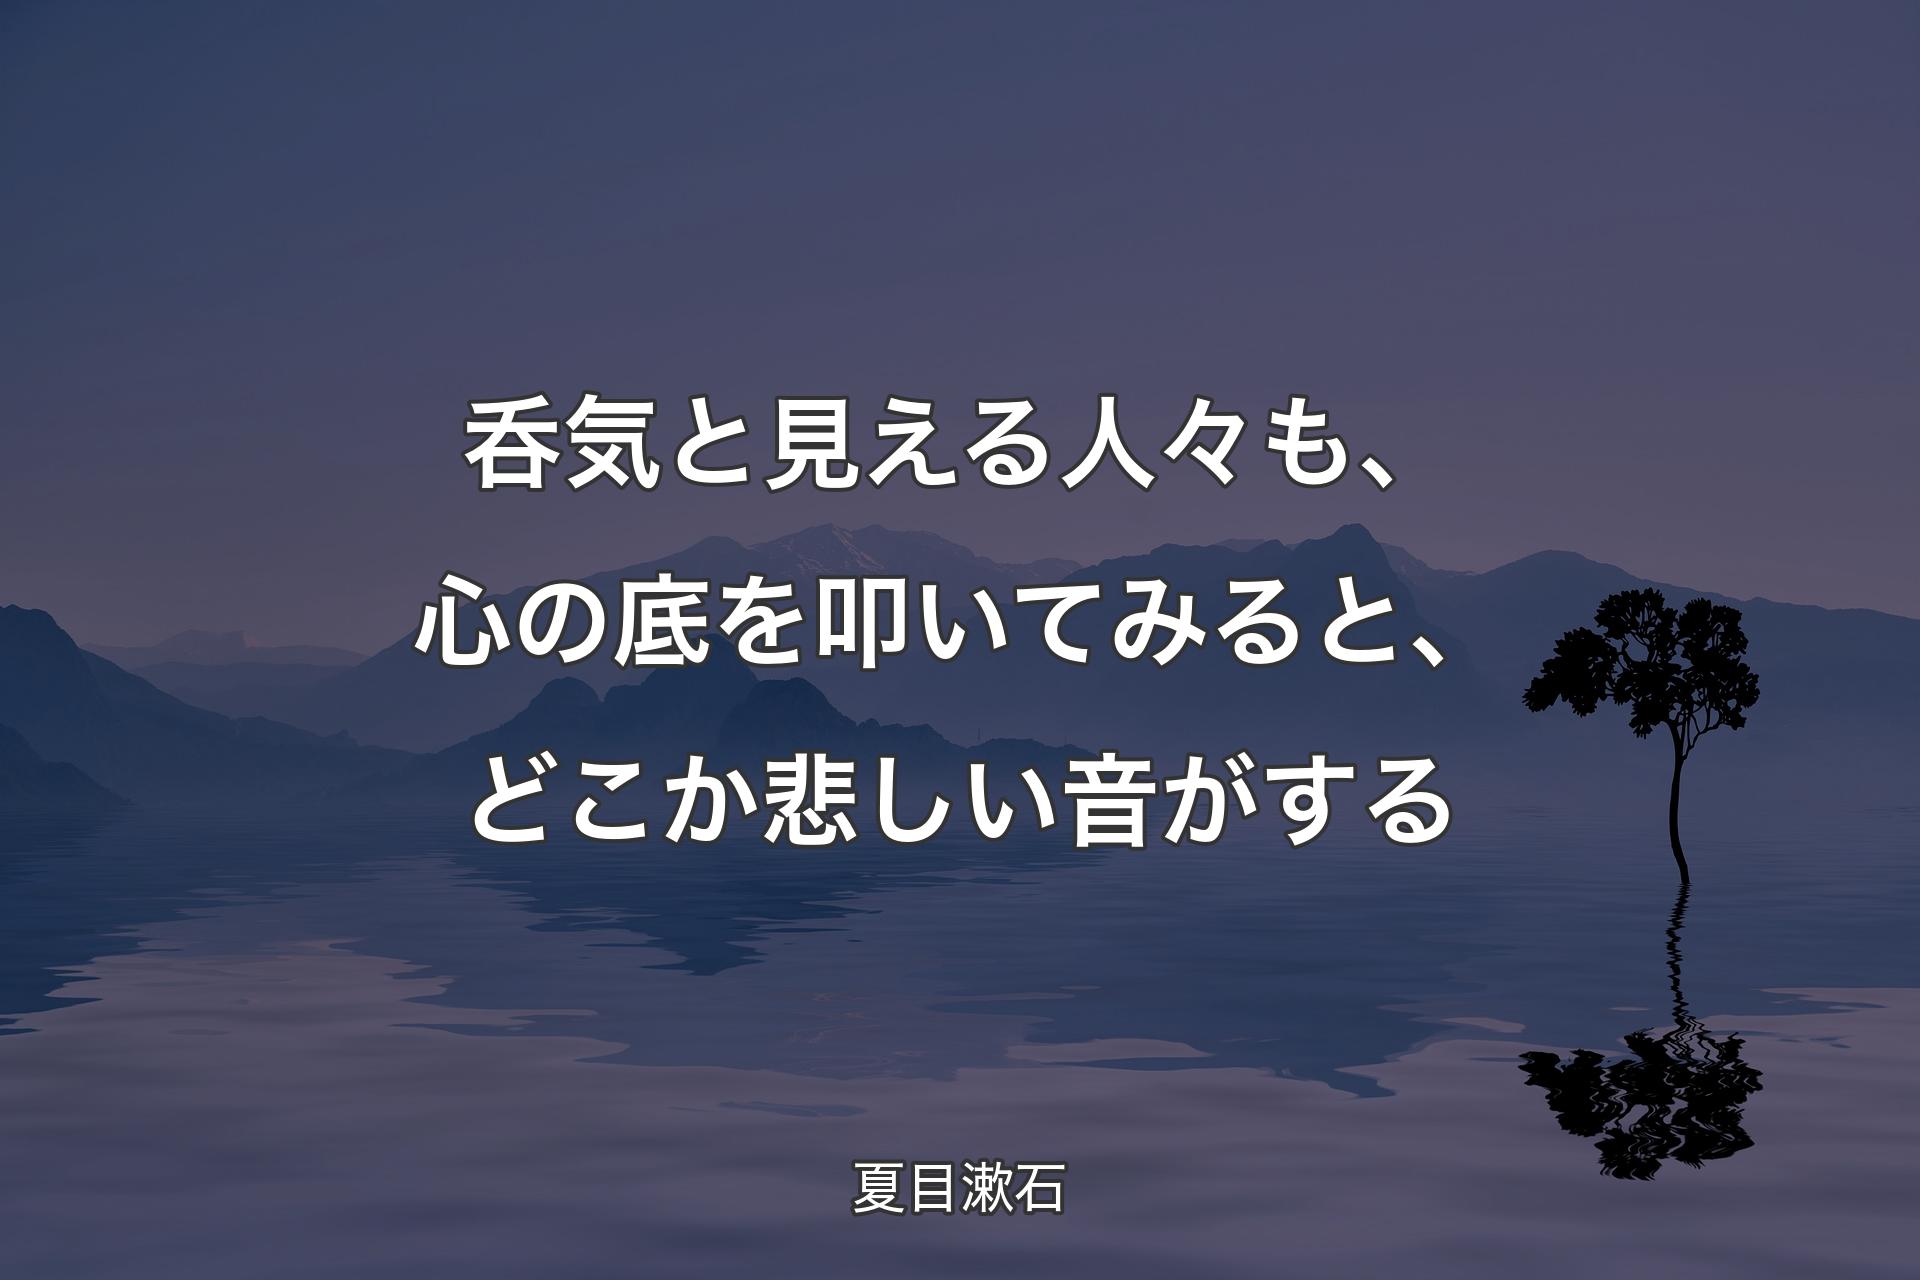 呑気と見える人々も、心の底を叩いてみると、どこか悲しい音がする - 夏目漱石